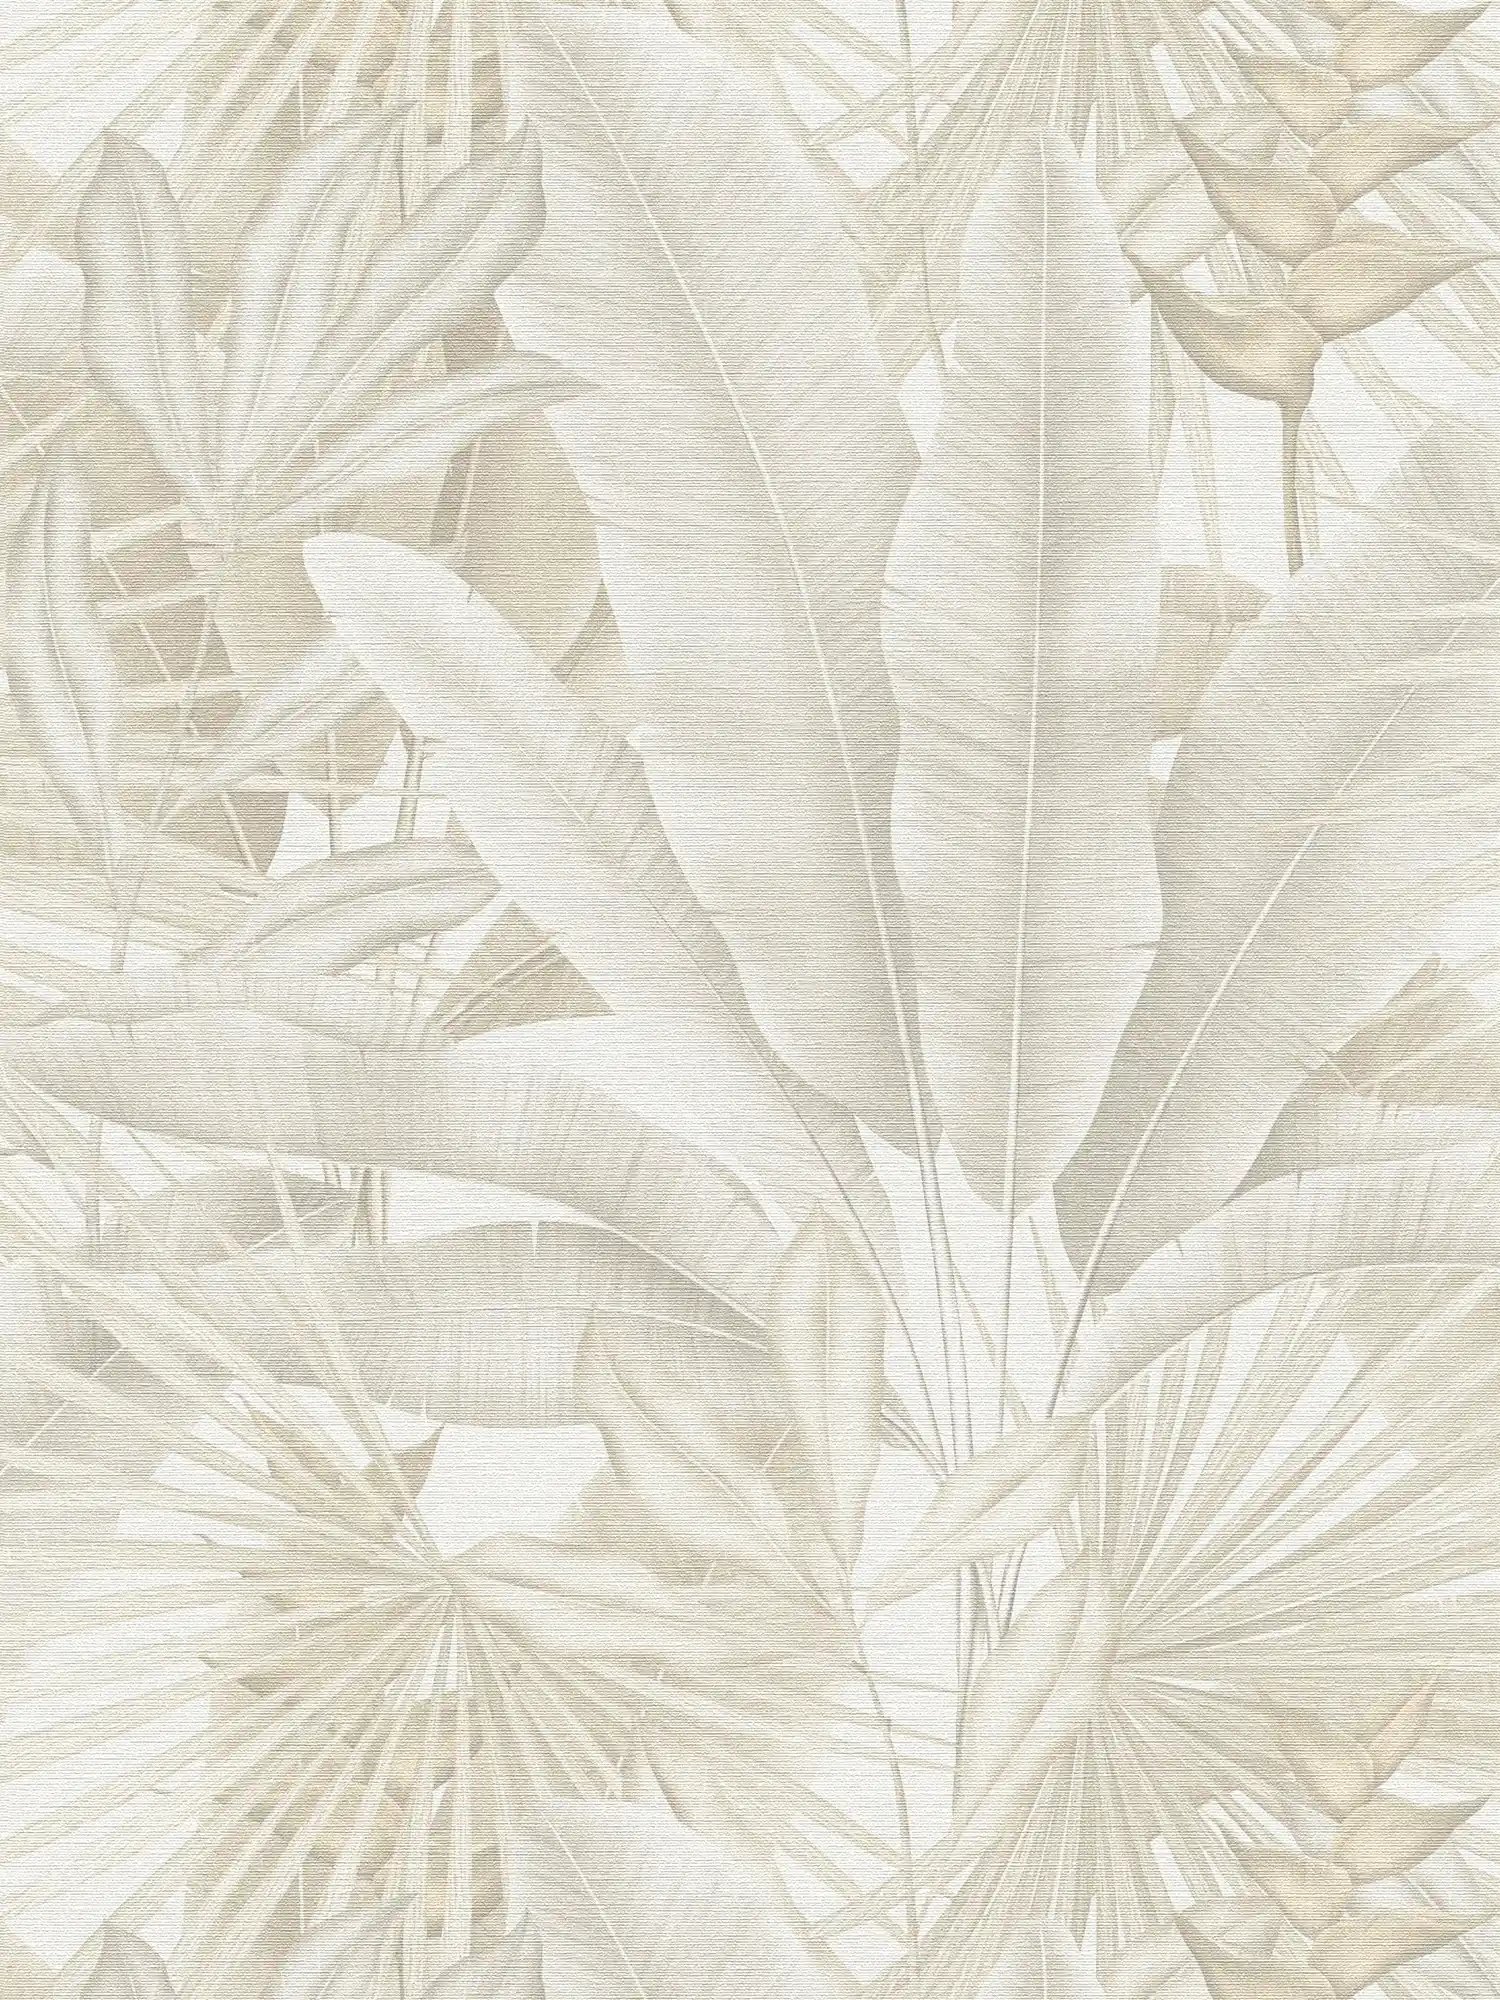 Jungle behang in zachte kleuren - beige, crème, grijs
